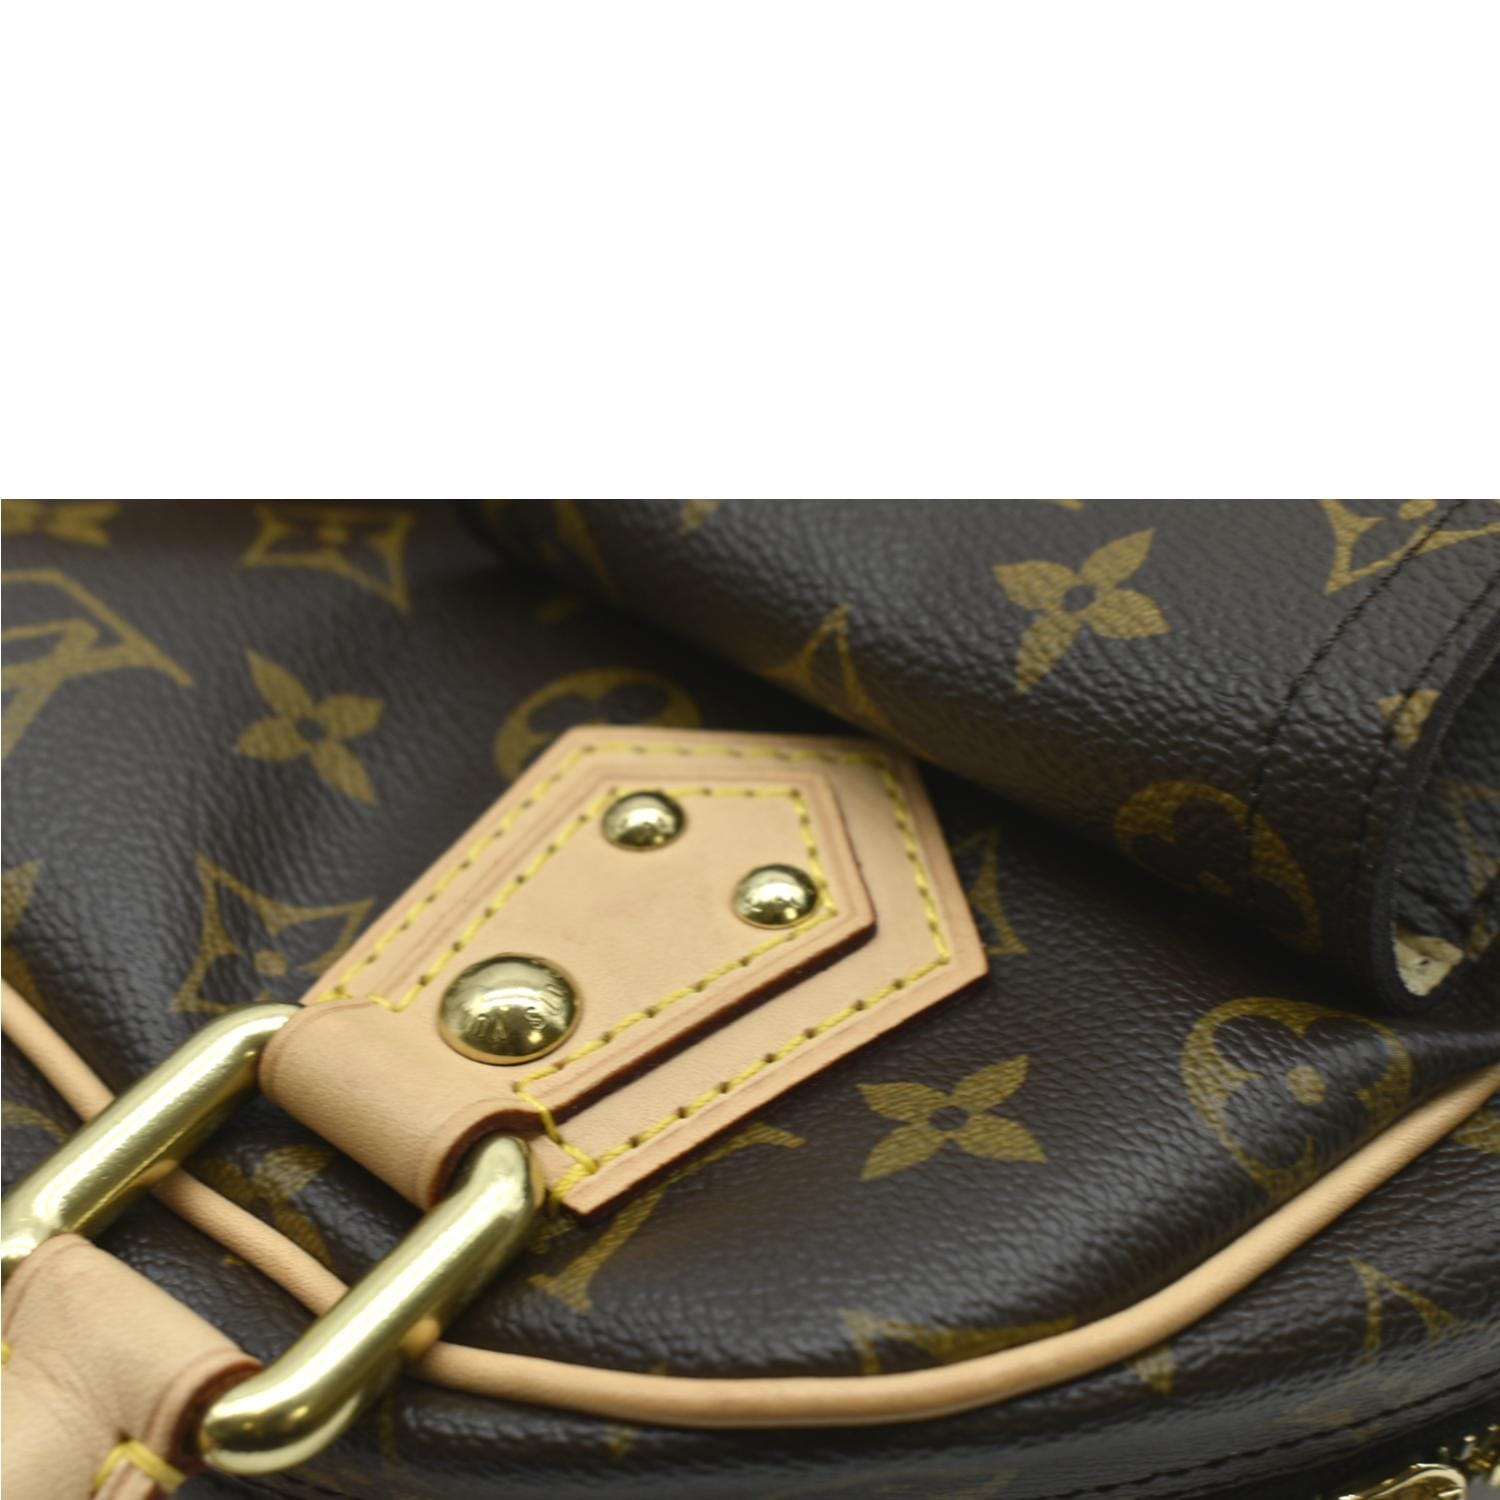 M43481 Louis Vuitton 2017 Premium Monogram Canvas Manhattan Bag